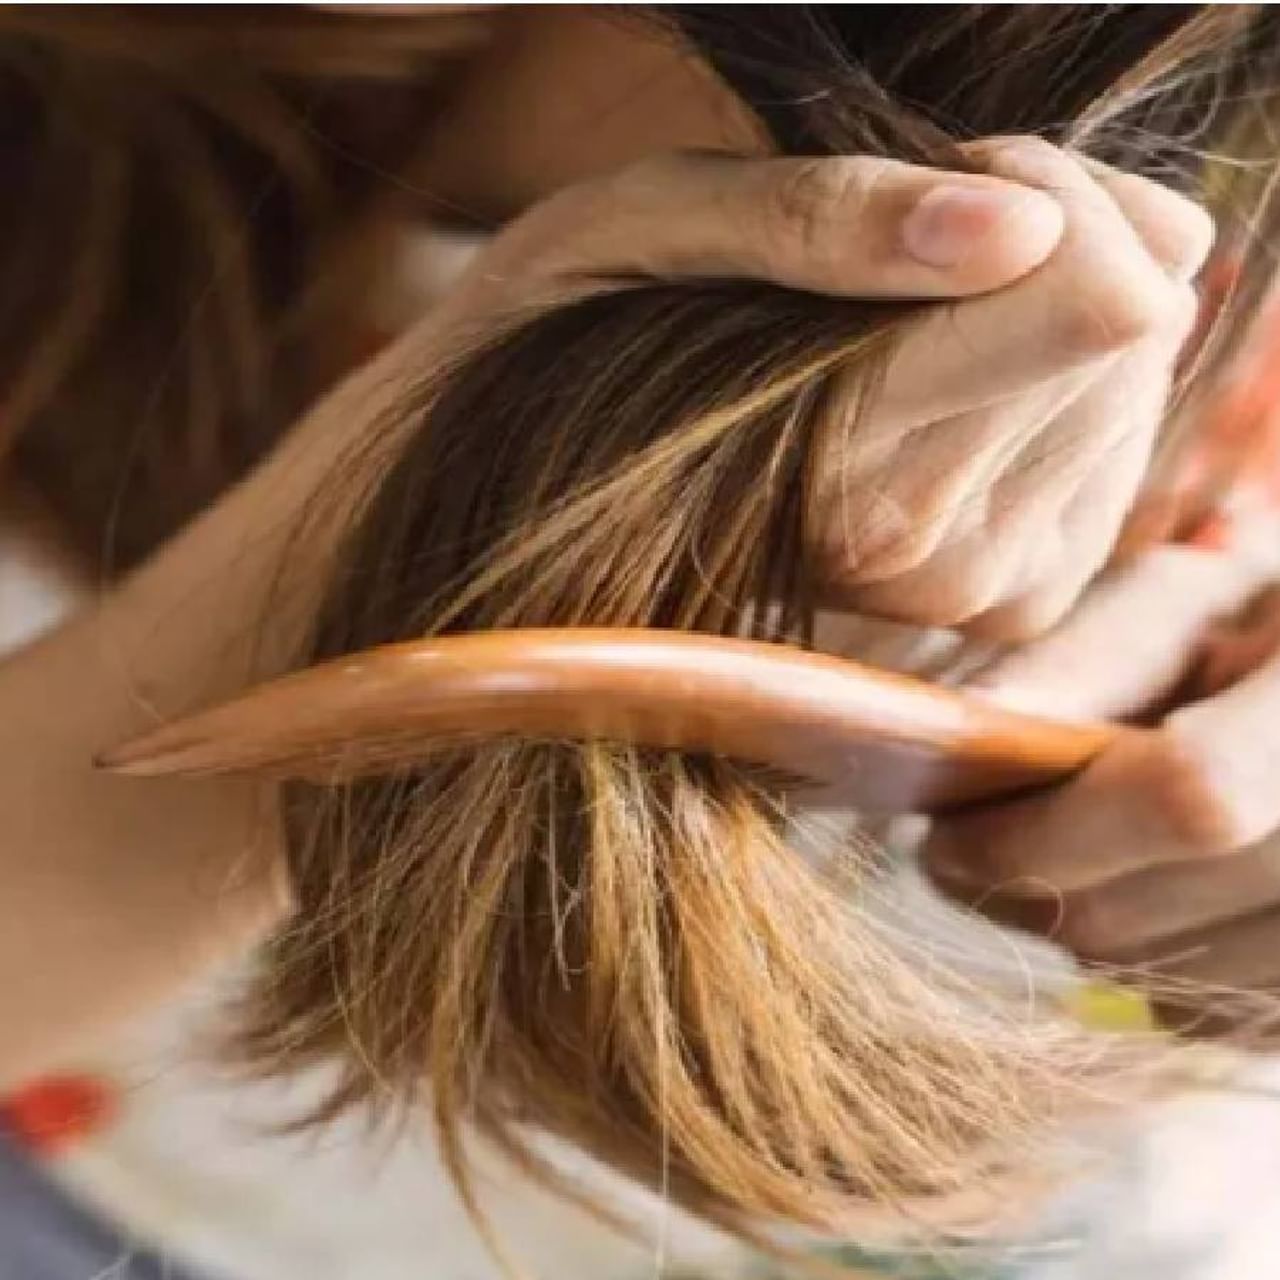  केस गळणे ही एक सामान्य समस्या आहे. मात्र पावसाळ्यात ही समस्या मोठ्या प्रमाणात वाढते. हवेतील वाढत्या आर्द्रतेमुळे केस खूप ड्राय  फ्रिजी राहतात. त्यामुळे केस झपाट्याने गळू लागतात.  